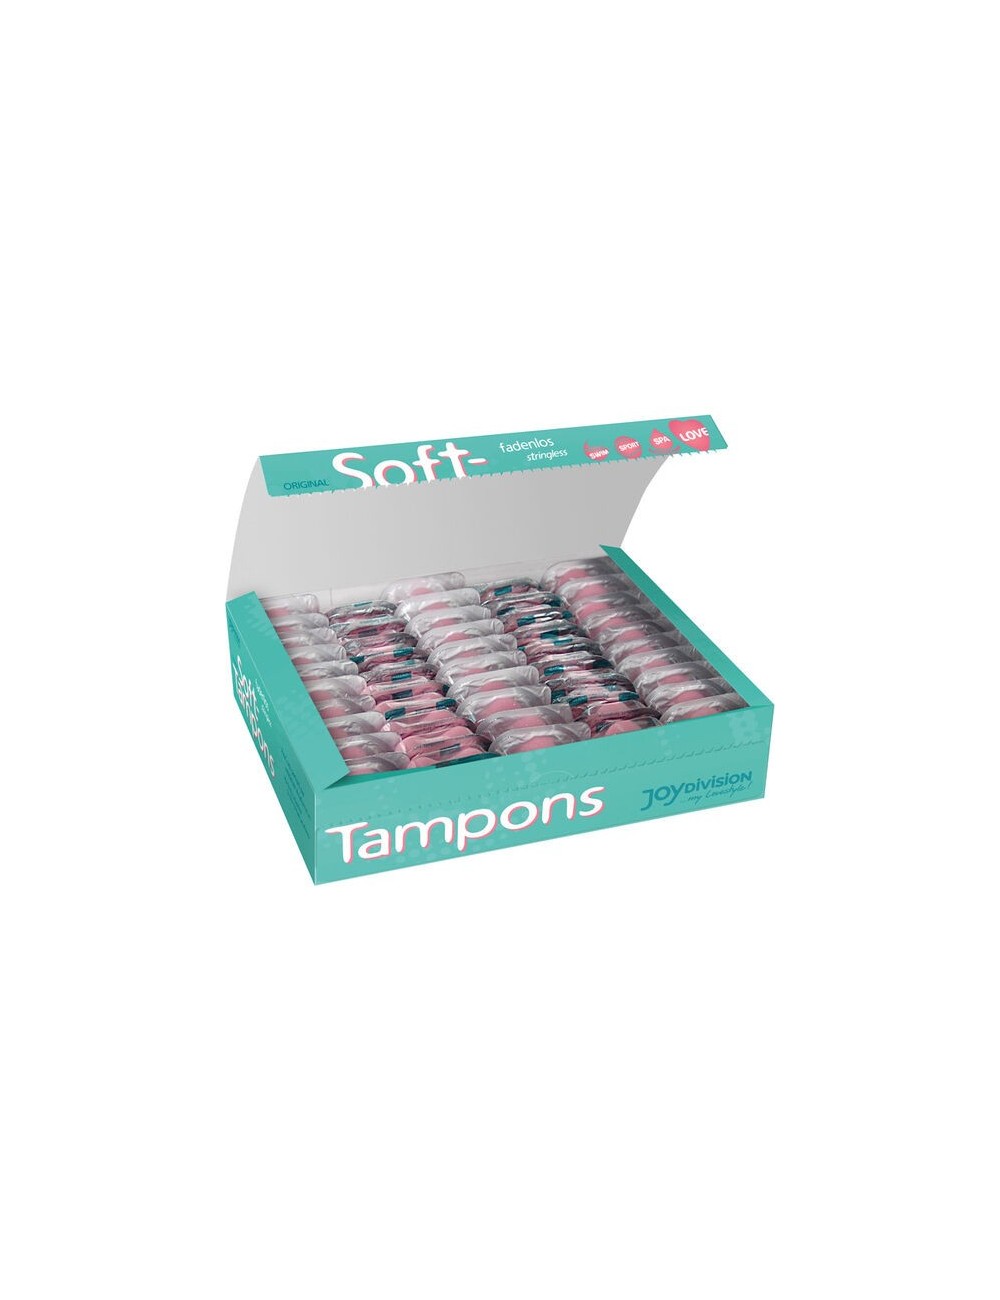 ORIGINAL SOFT-TAMPONS MINI X 50 UNITES - Hygiène - JOYDIVISION SOFT-TAMPONS